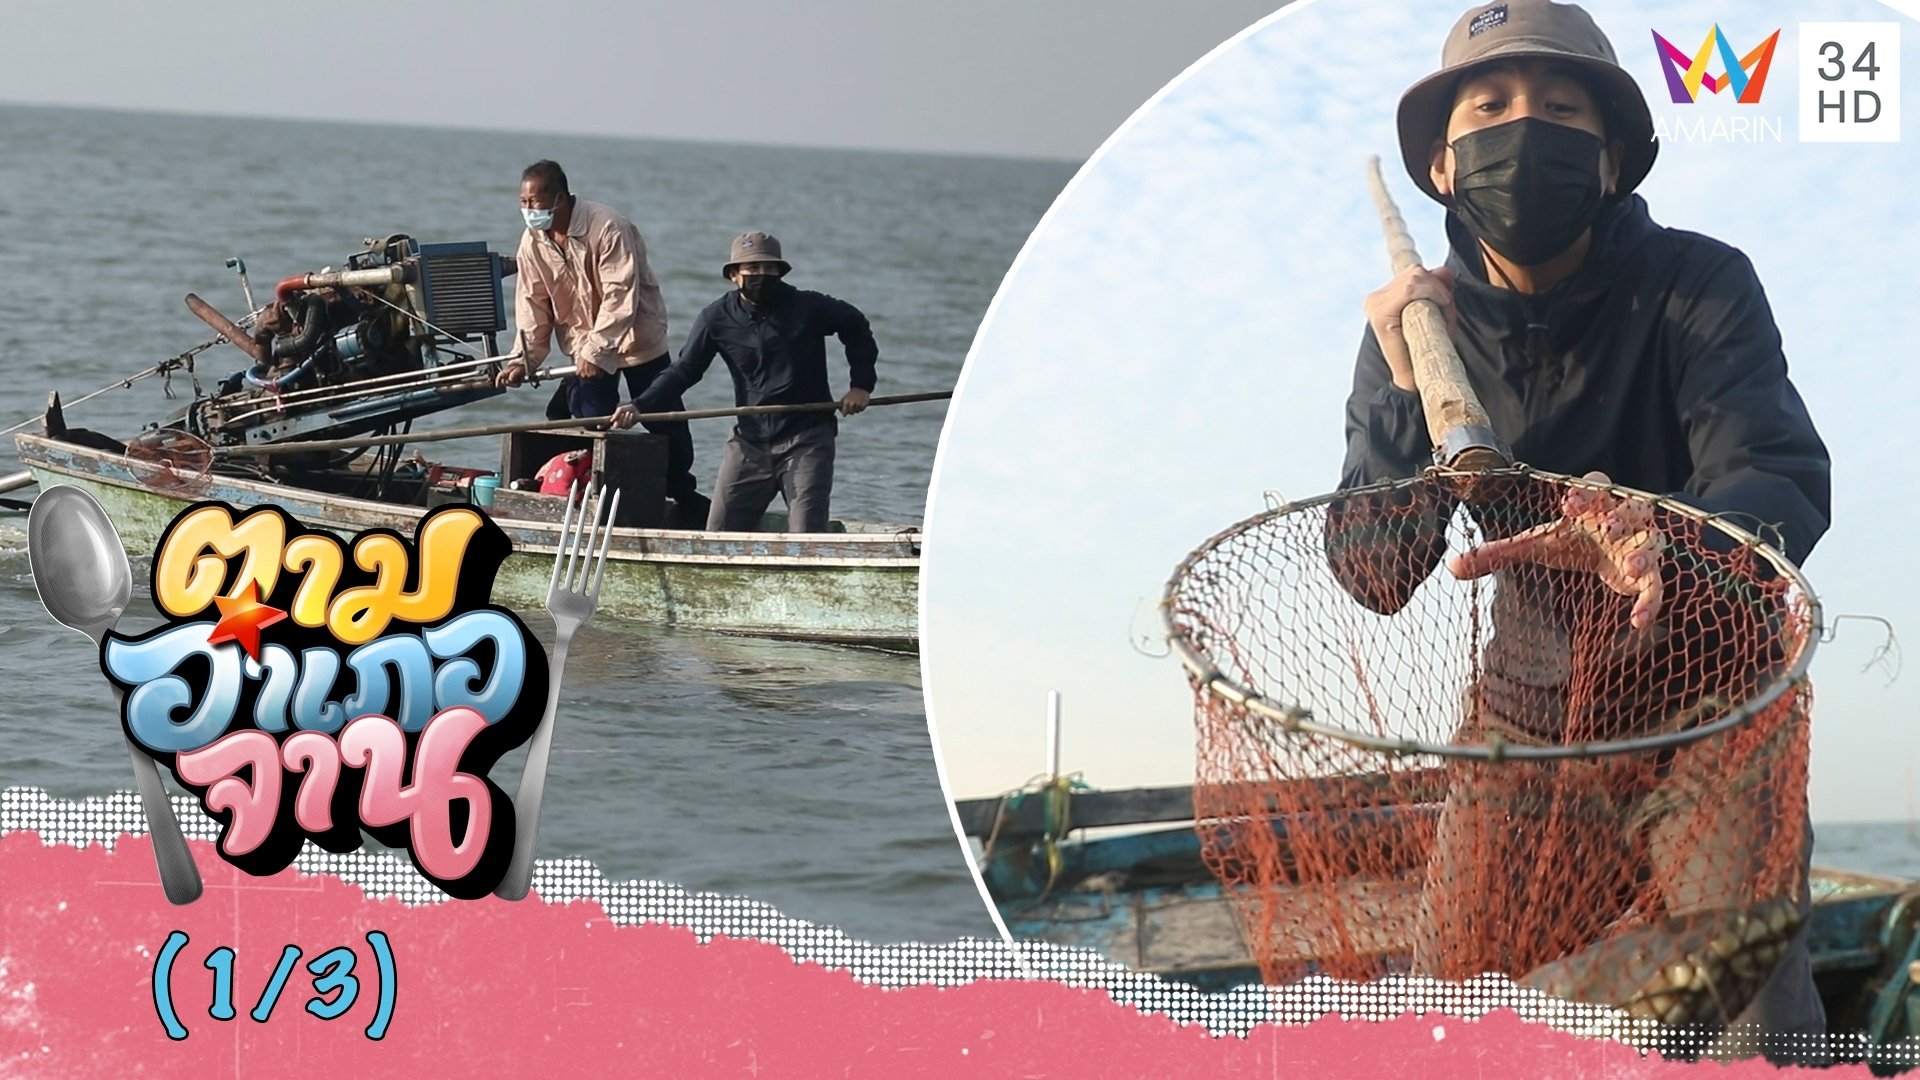 ตื่นเช้าออกเรือตามหา หัวปลาดุกทะเล จ.ชลบุรี | ตามอำเภอจาน | 22 ม.ค. 65 (1/3) | AMARIN TVHD34